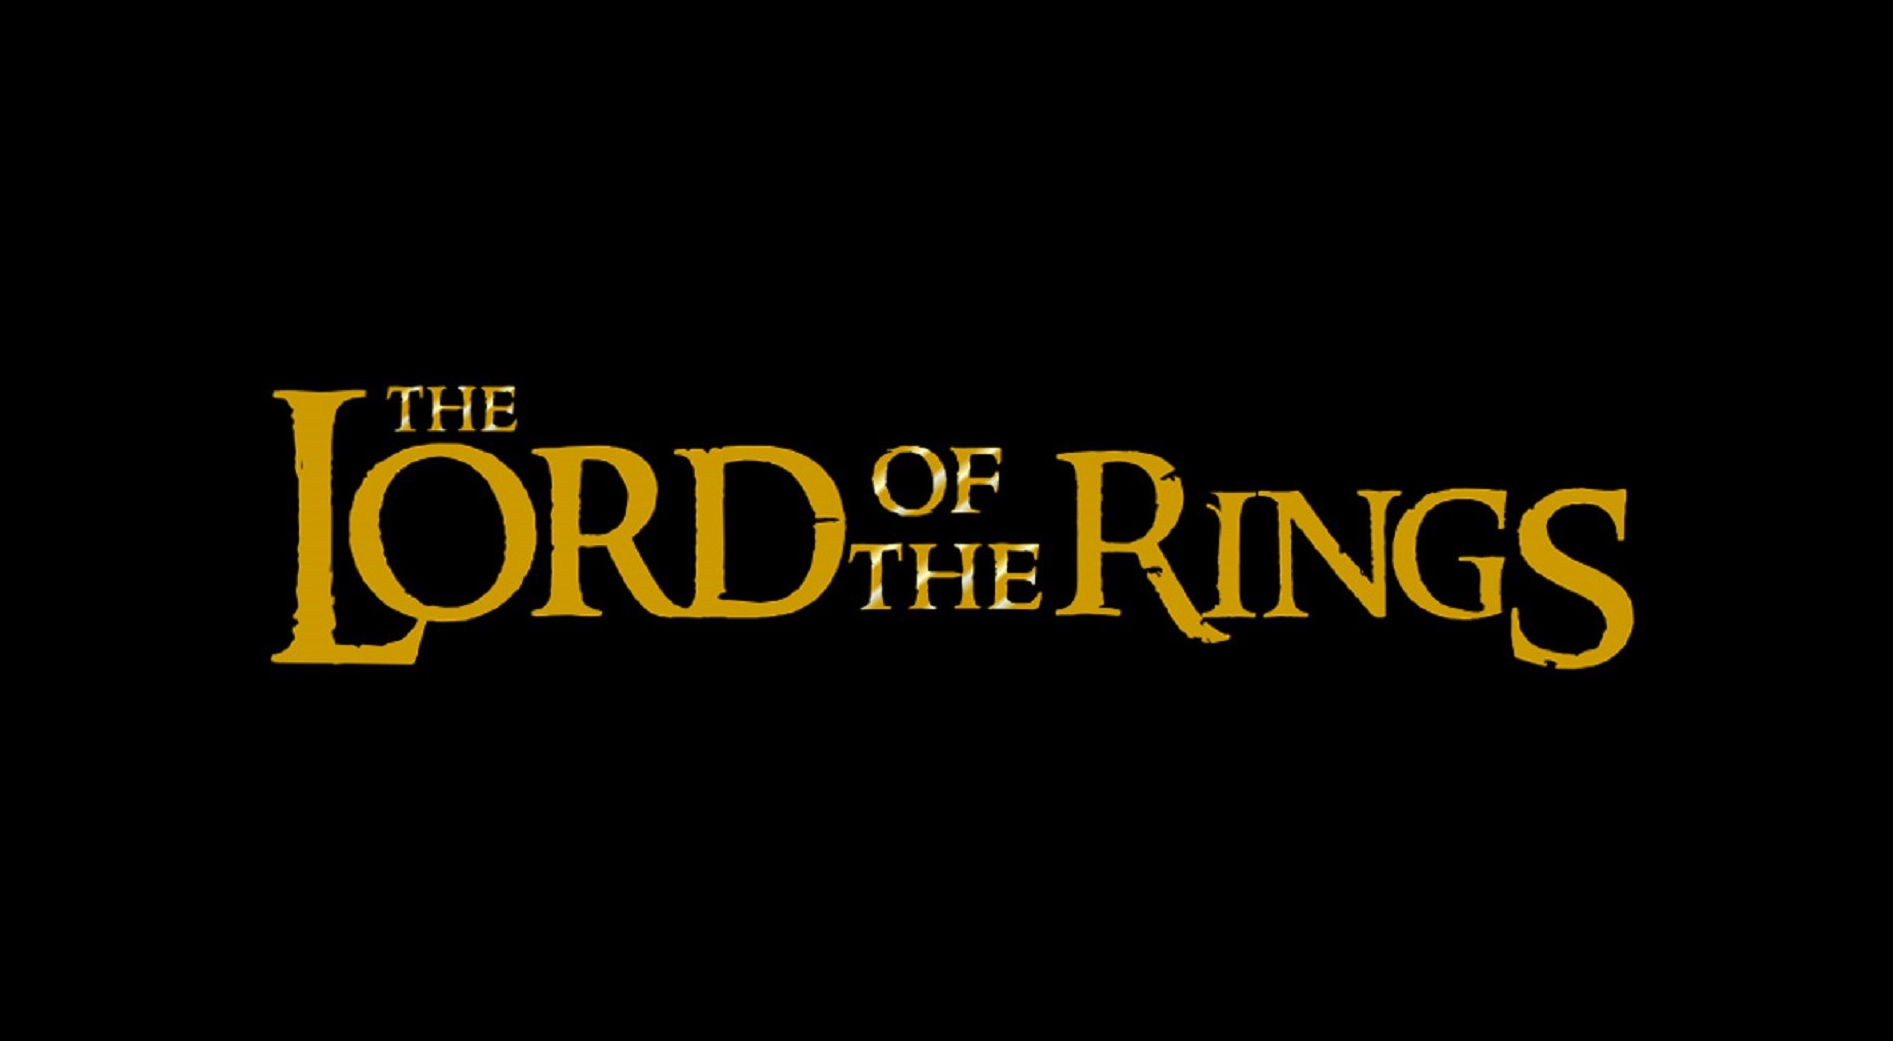 มีเกมจาก IP ของ The Lord of the Rings 5 เกมที่จะเปิดตัวในปีงบประมาณ 2023/24